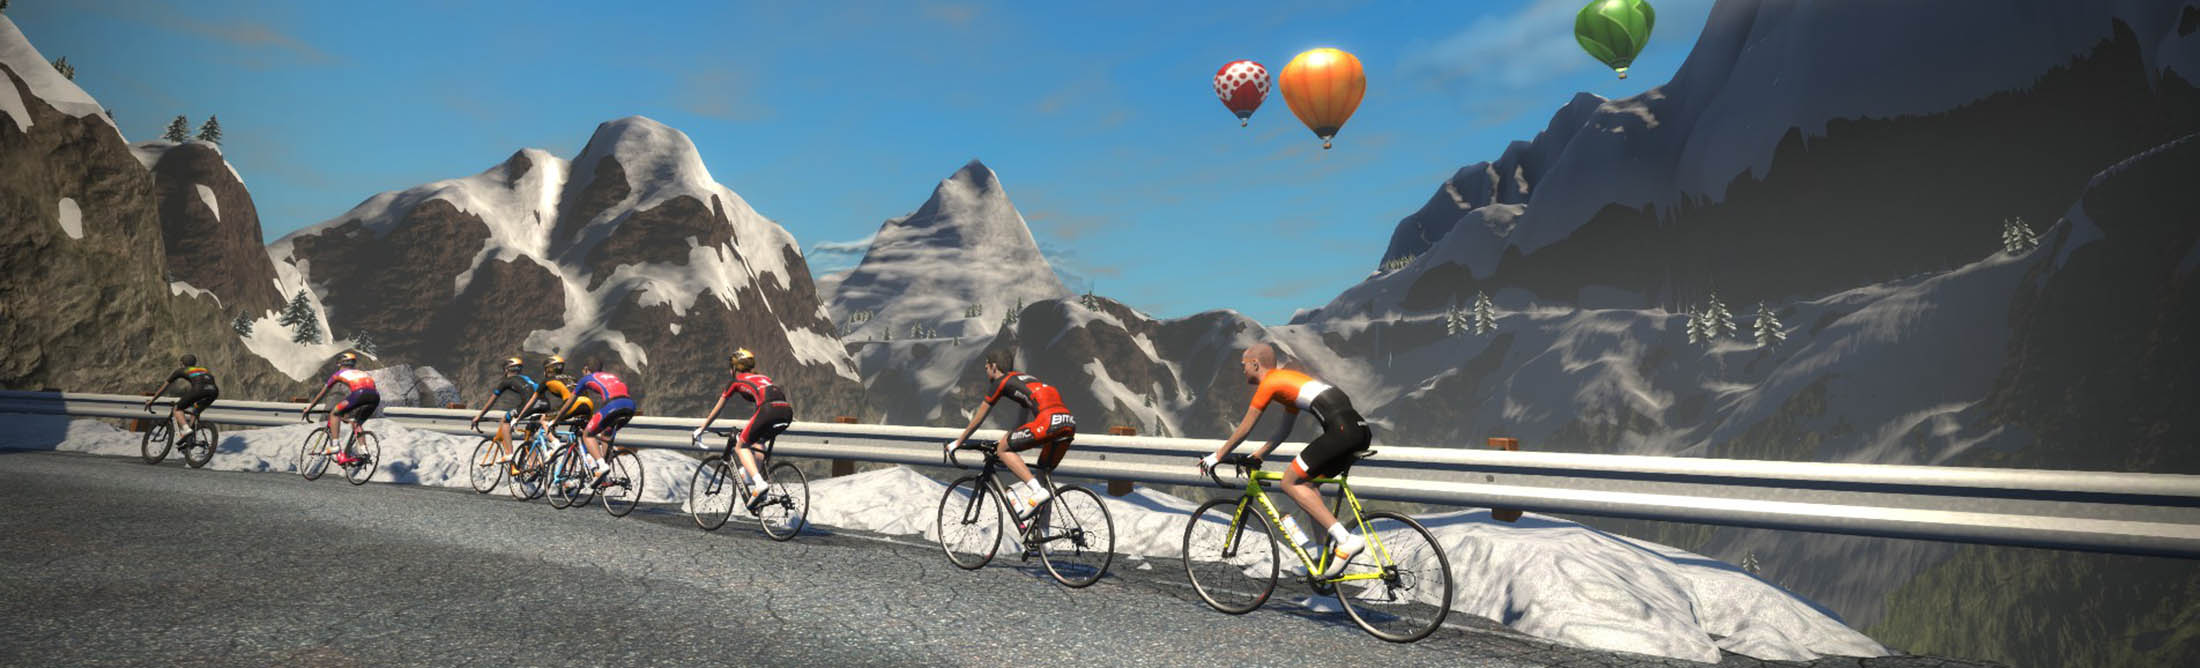 Cyclists can ride through virtual Alps.
